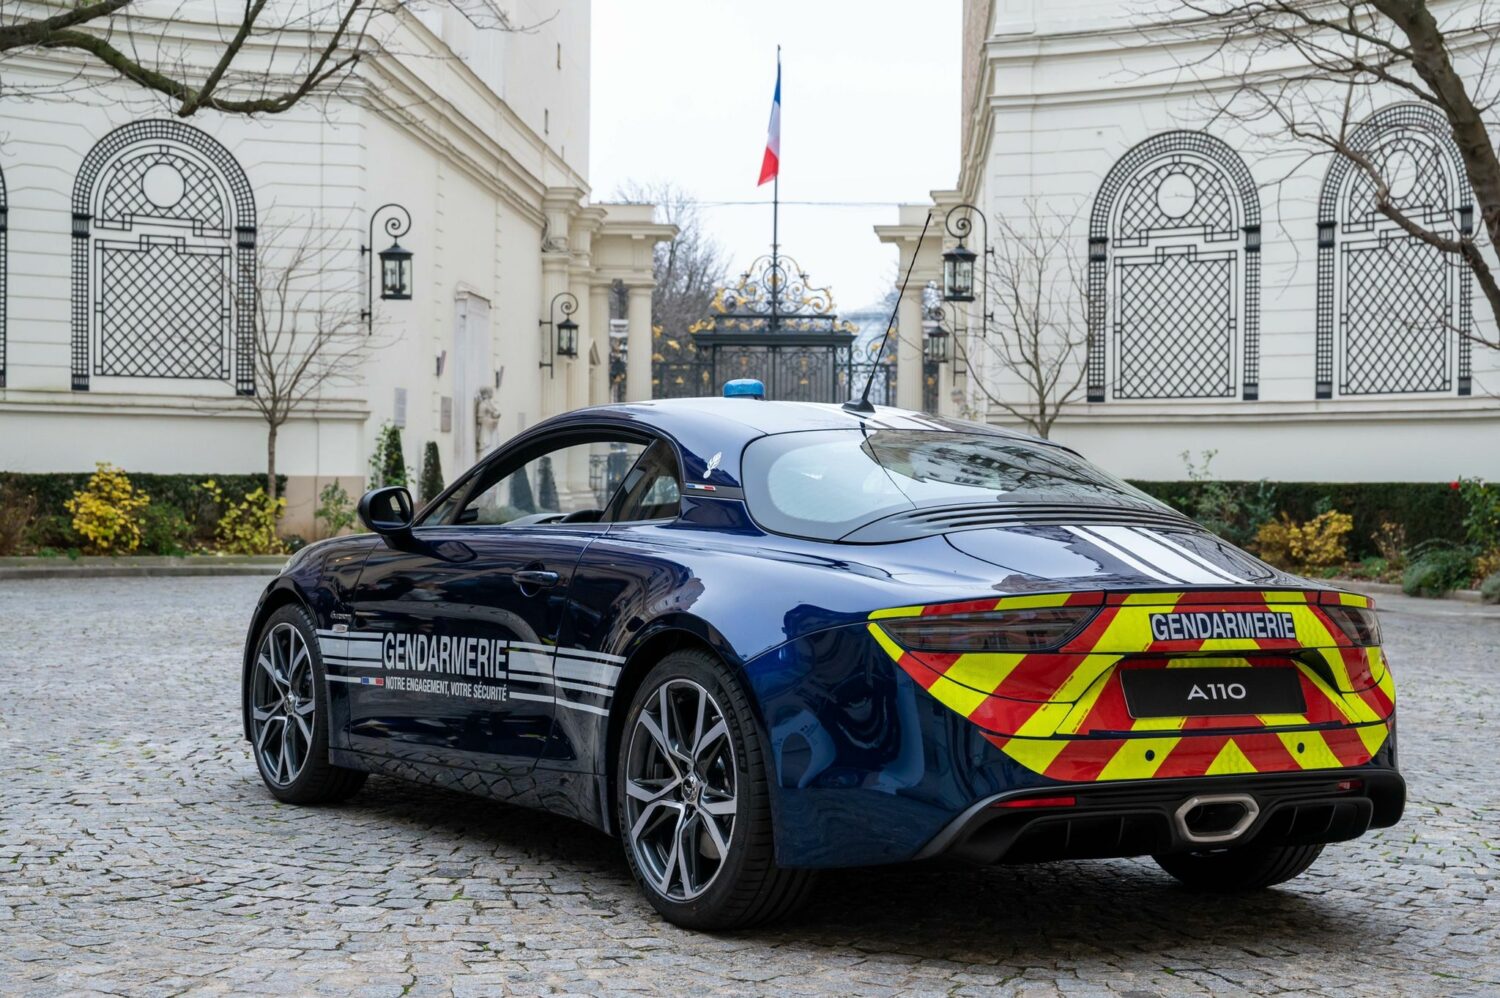 Dvoilement des nouvelles Alpine A110 gendarmerie nationale (12).jpg